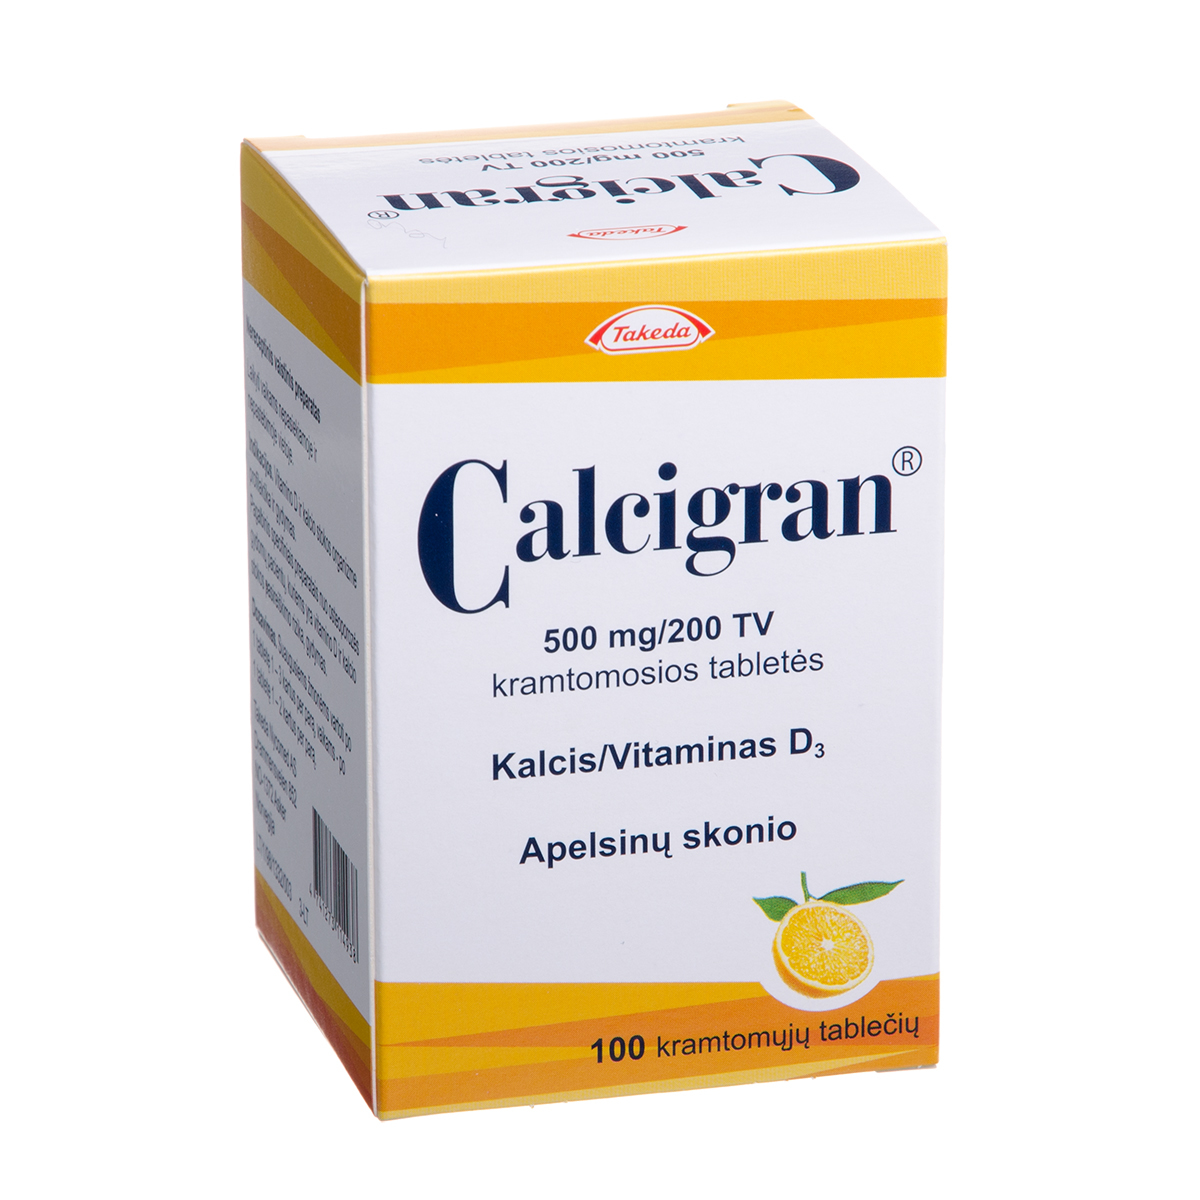 CALCIGRAN, 500 mg/200 TV, kramtomosios tabletės, N100